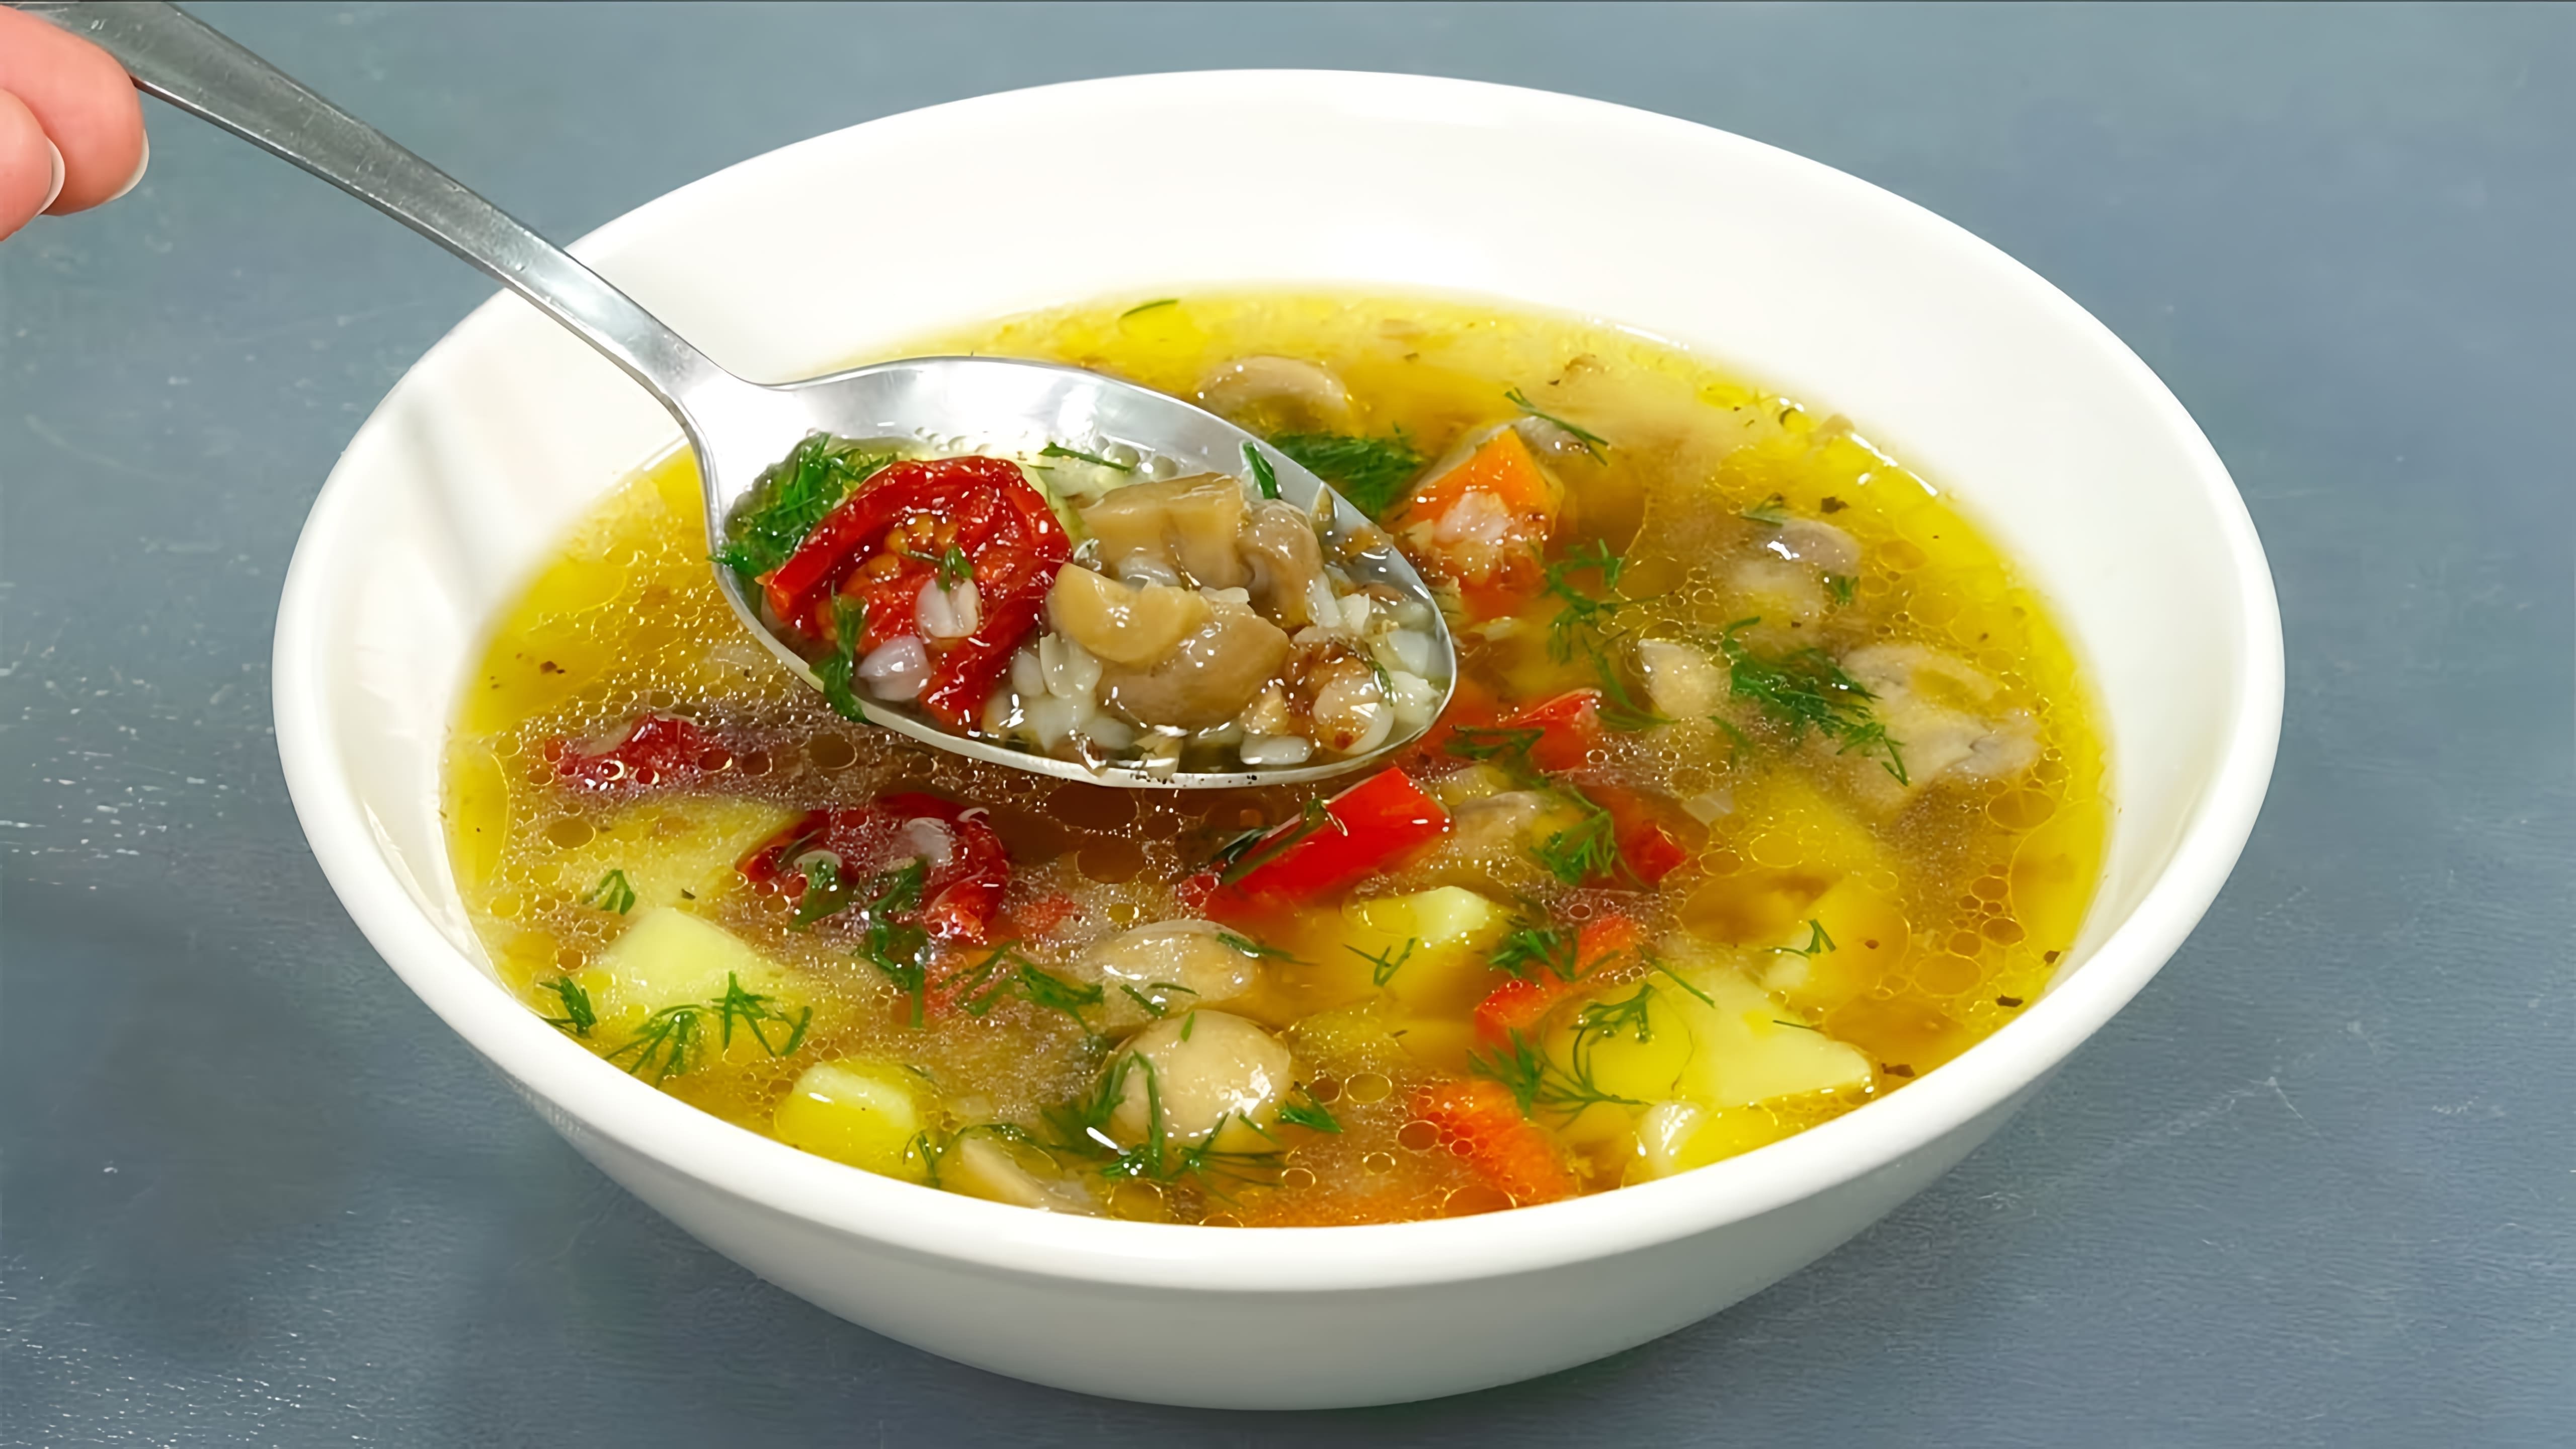 Видео рецепты для трех блюд с грибным супом - суп с ячменем и грибами, вегетарианский грибной суп с пельменями и уникальный суп из баклажанов и грибов